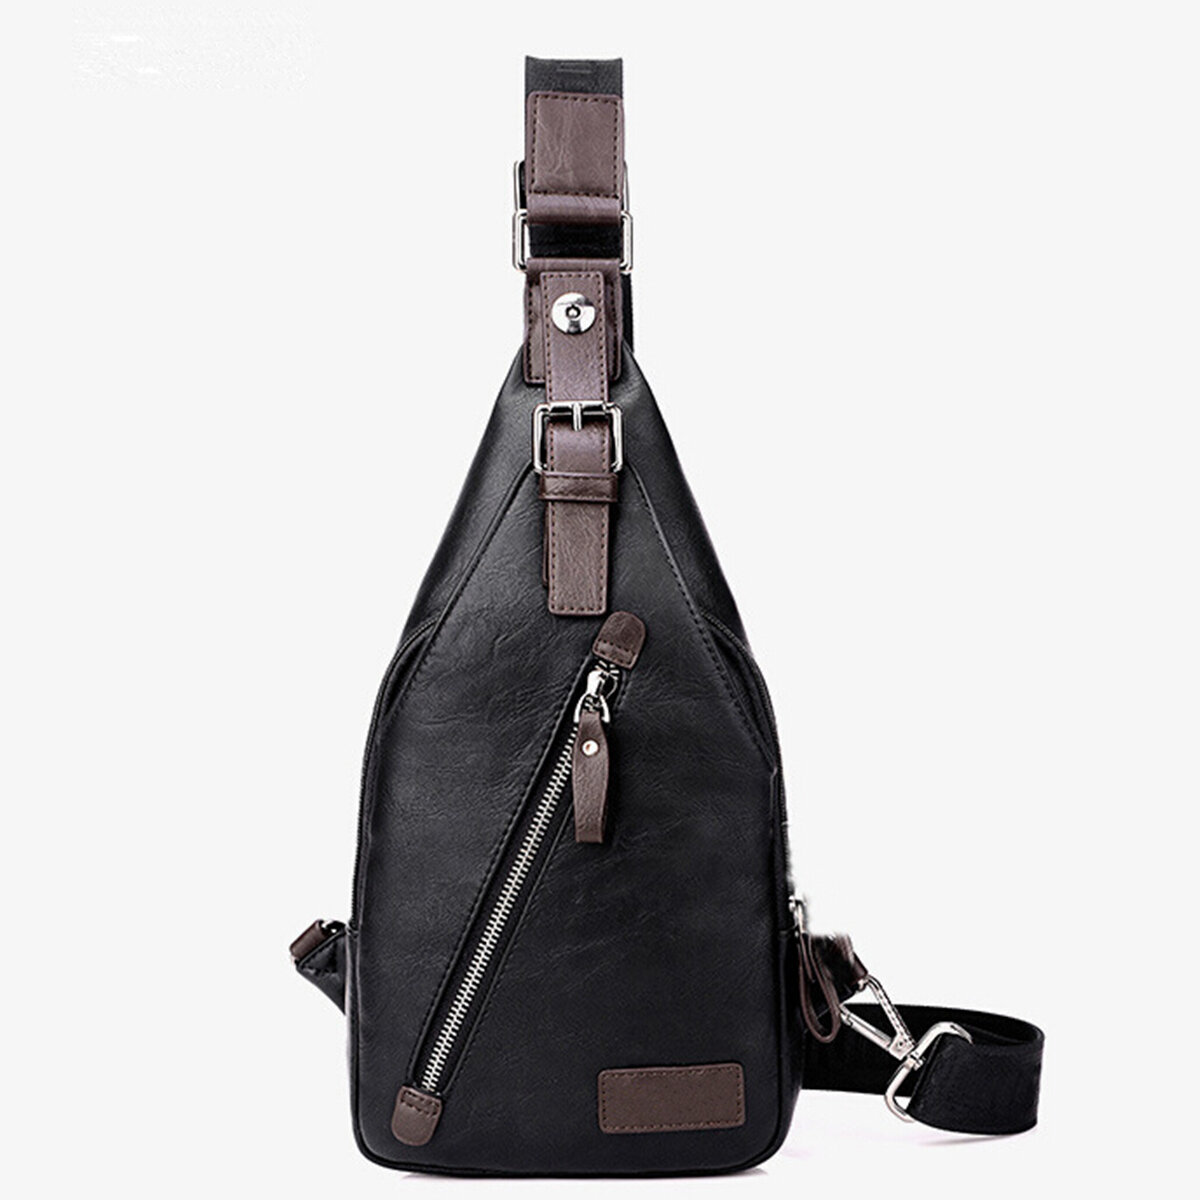 Leather Sling Bag Waterproof Chest Bag Crossbody Shoulder Messenger Casual Backpack Sport Travel